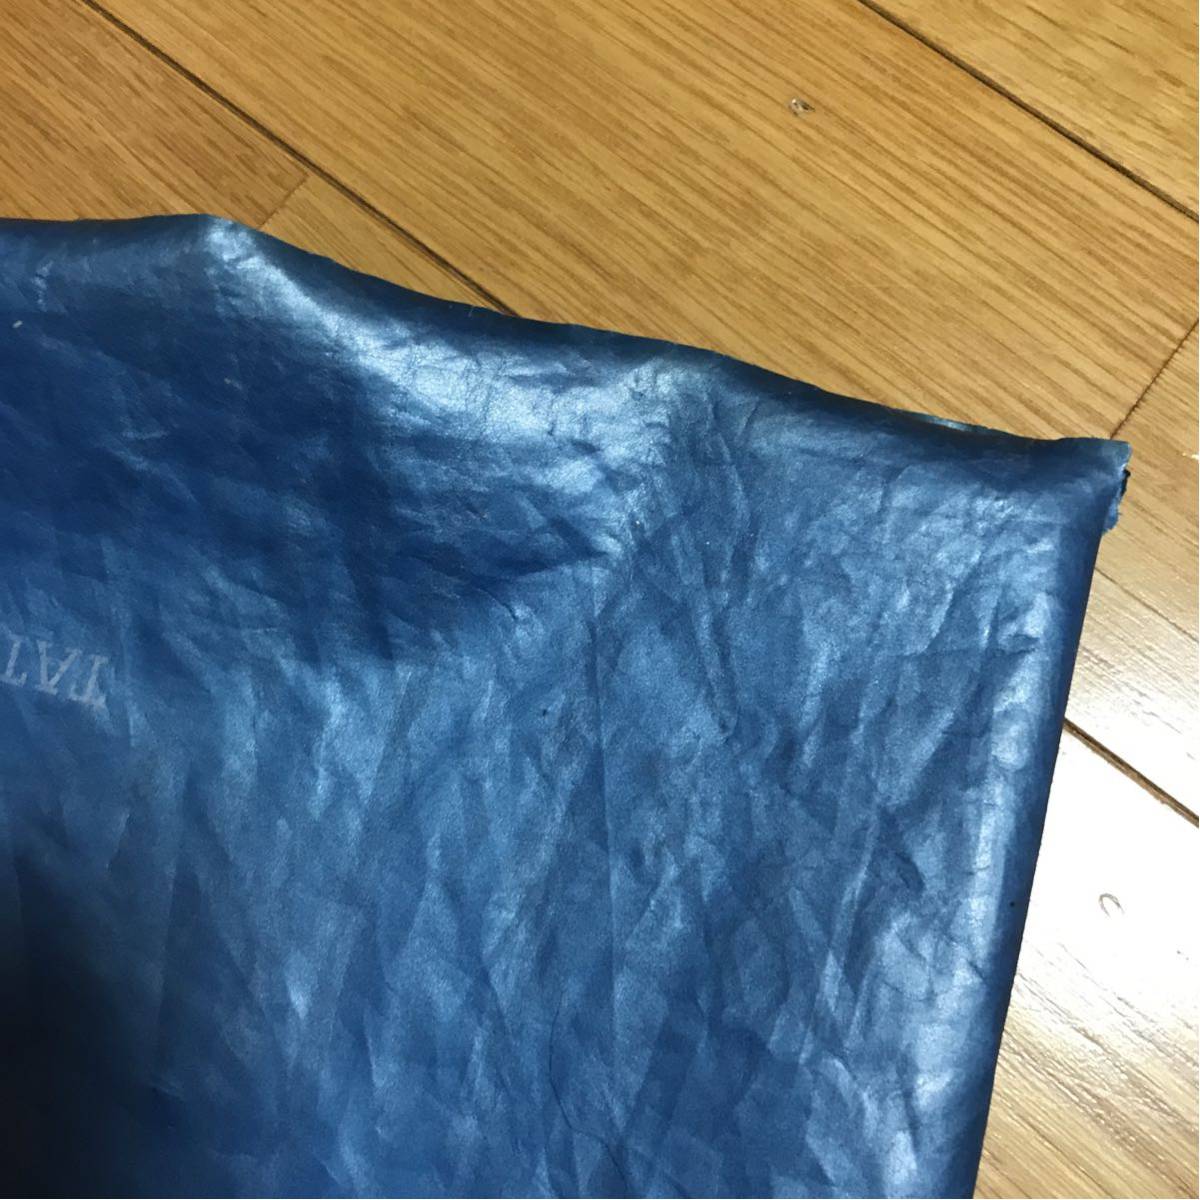 山下達郎 ビニール製袋 非売品キャンペーングッズ 40年くらい前の品なので傷みあります 破れ、シワ、折れ、汚れあります_画像8